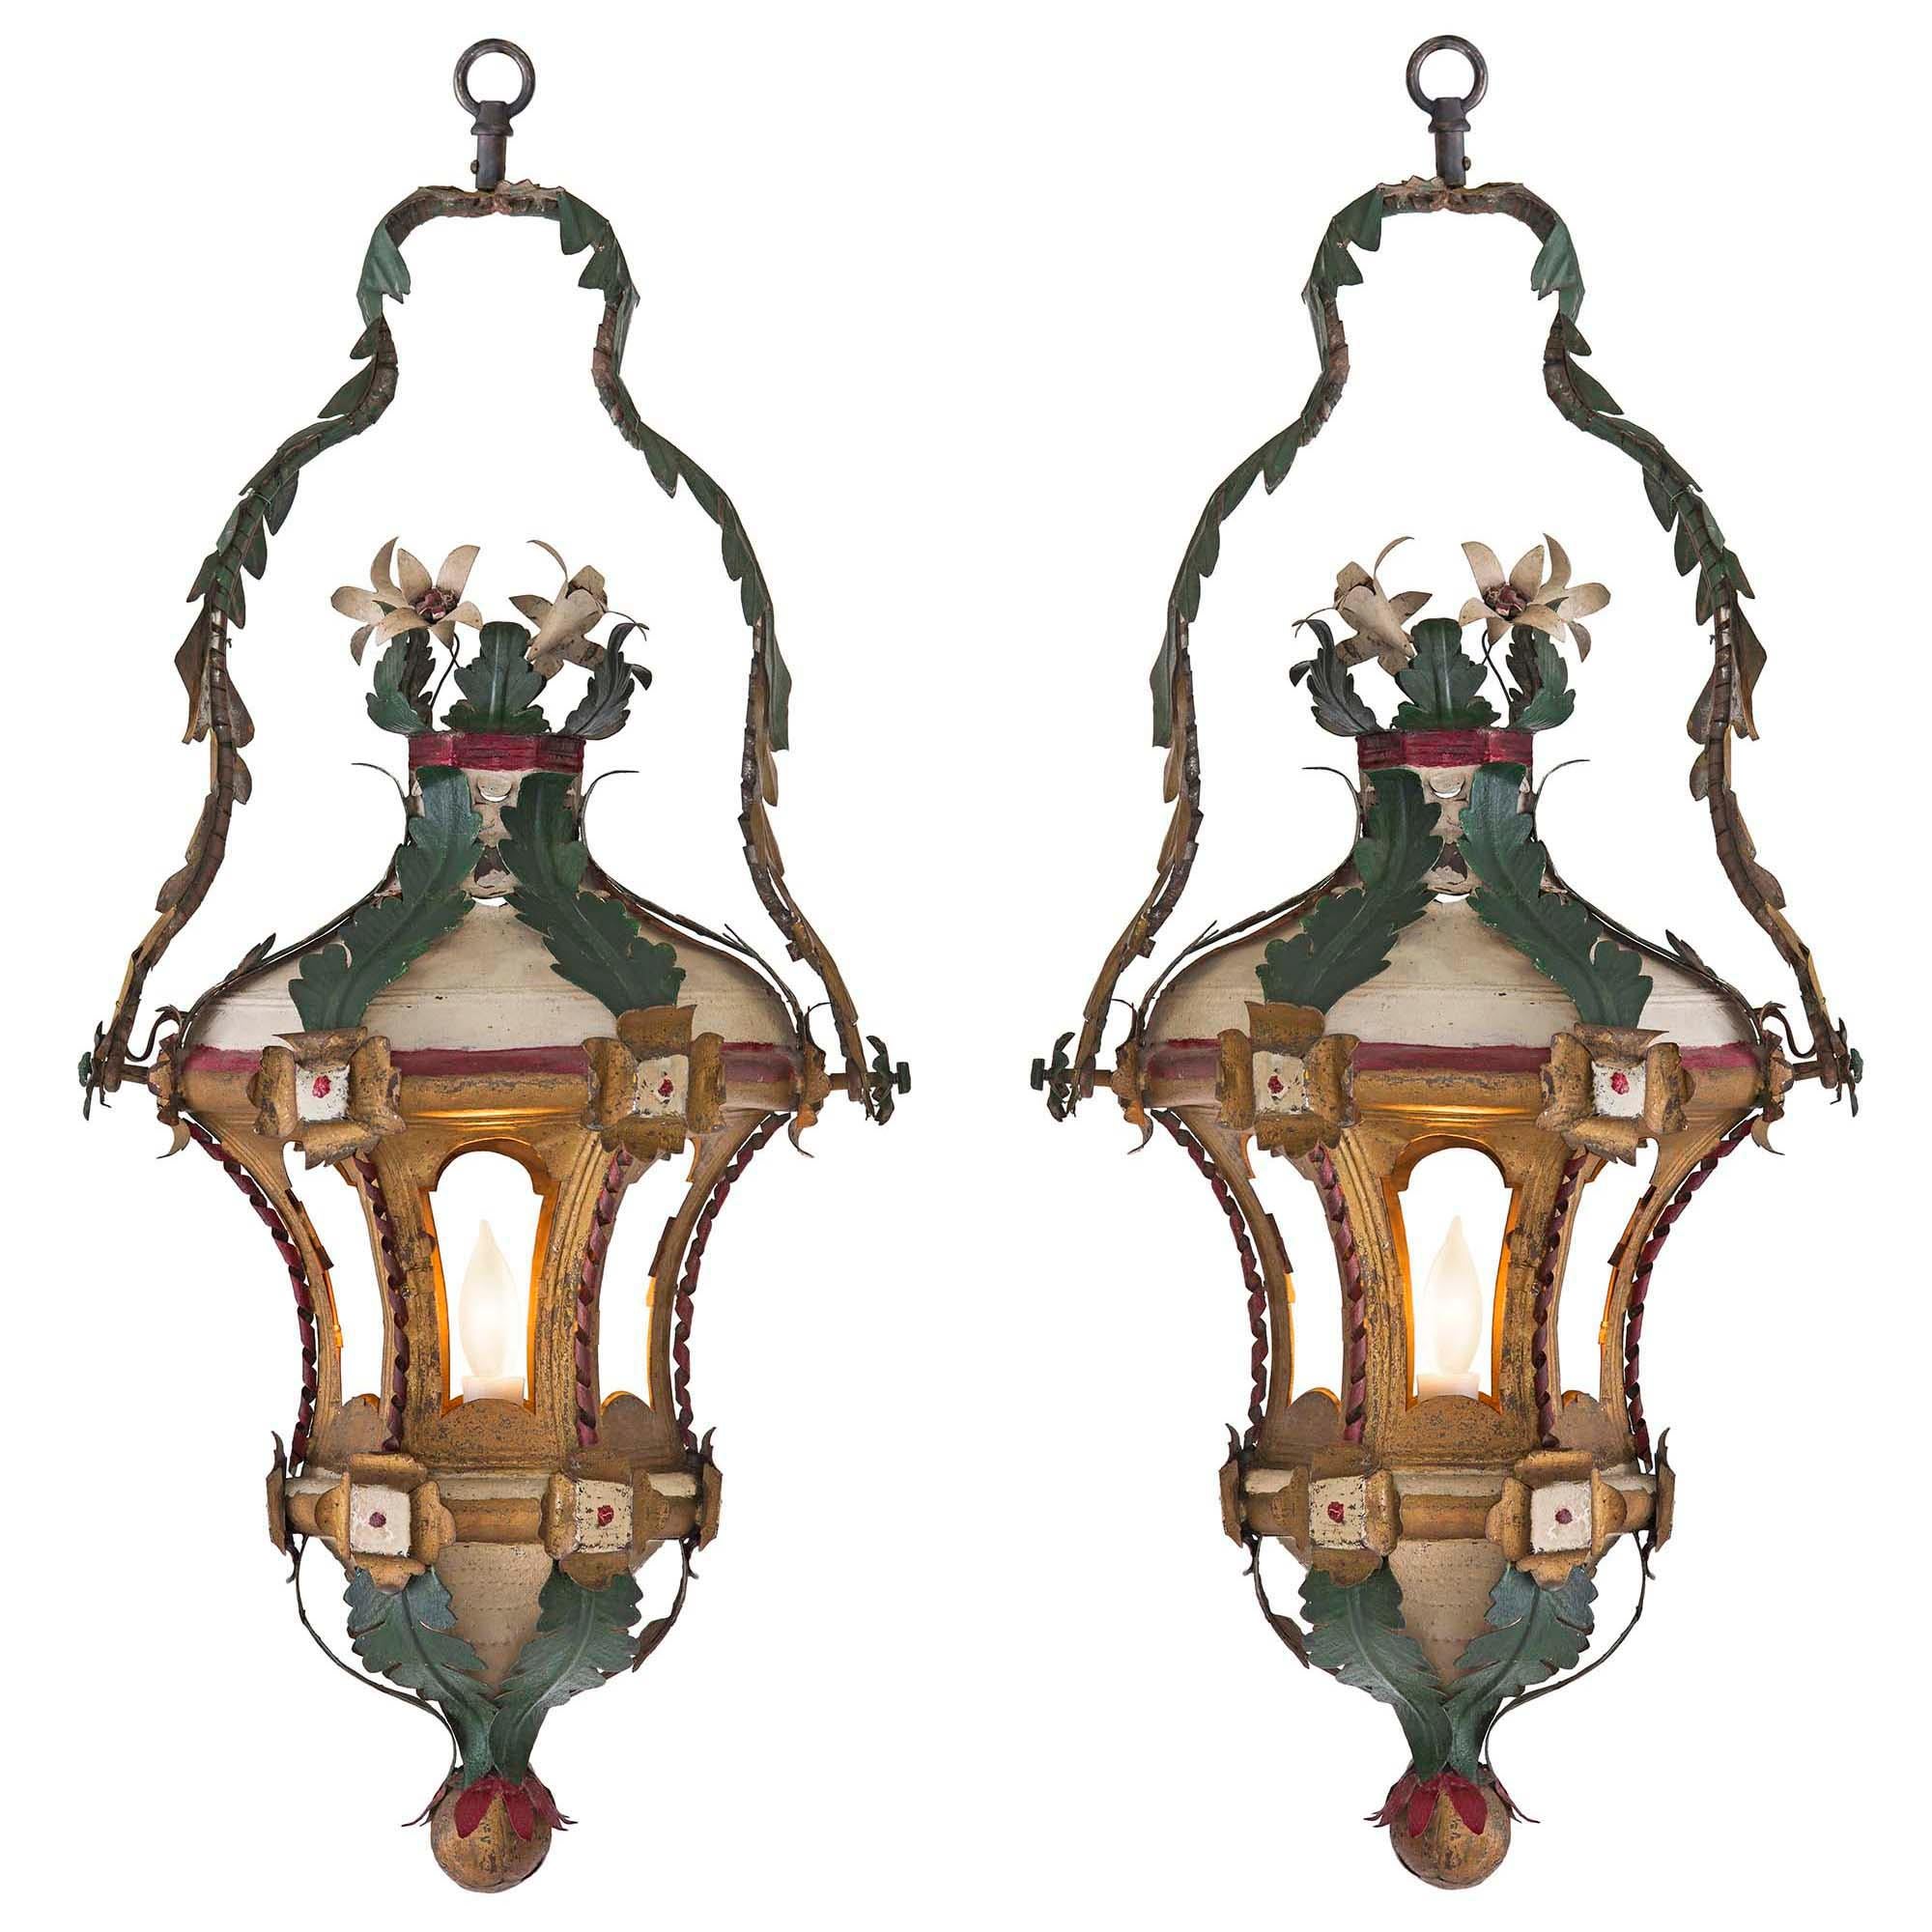 Une paire très décorative de lanternes vénitiennes du 18ème siècle peintes et dorées à la feuille. La paire est dotée d'une boule inférieure dorée qui mène à des feuilles vertes en forme de 